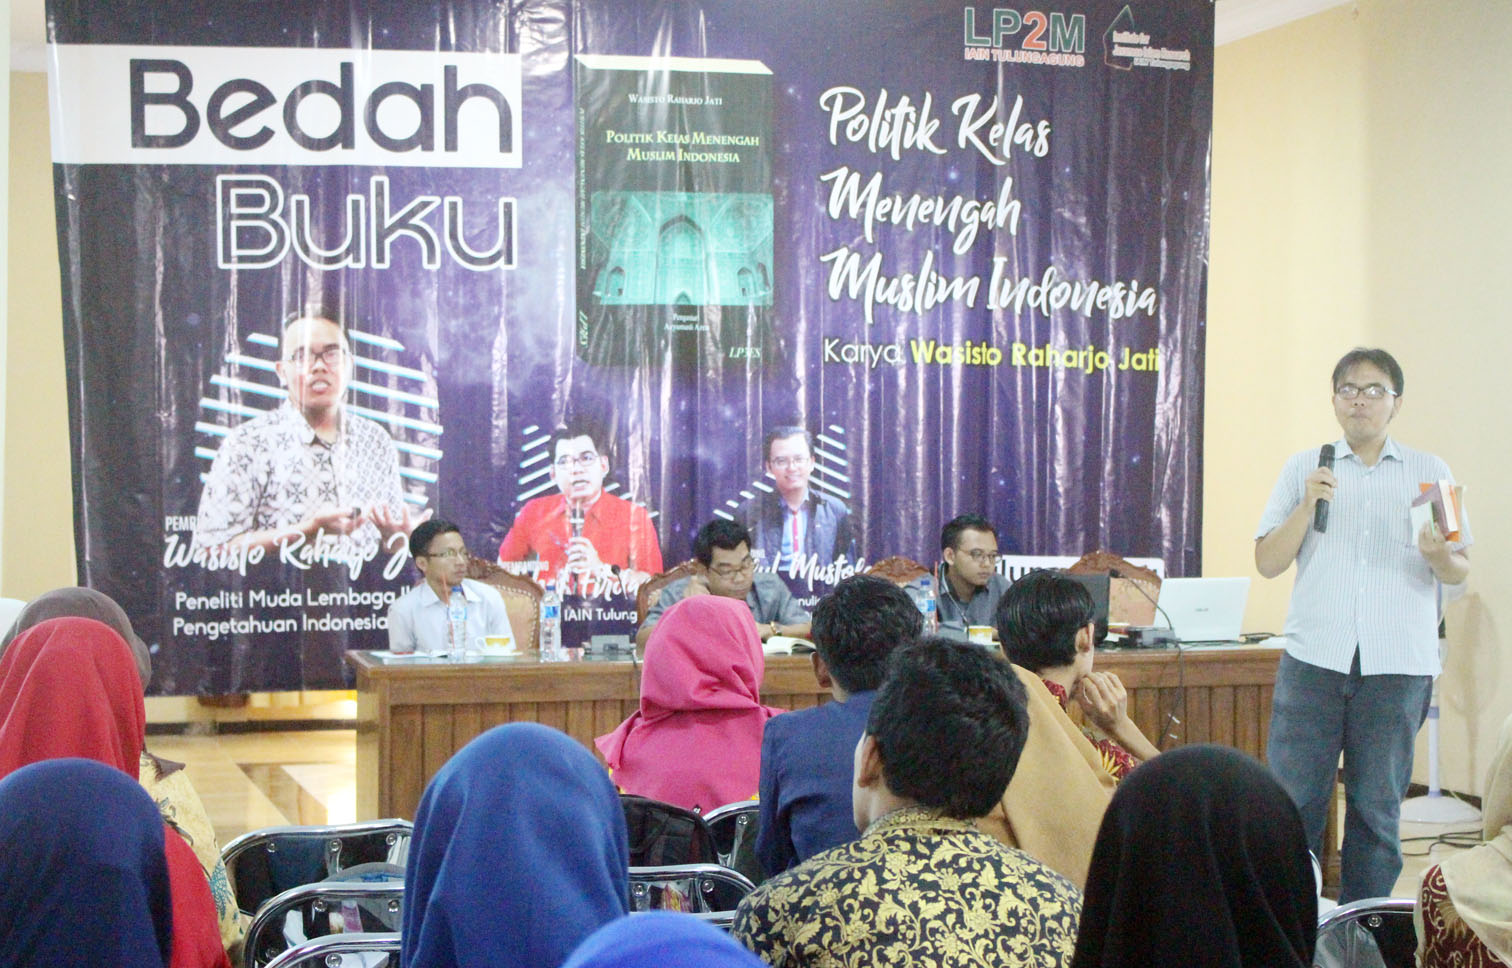 Bedah Buku Politik Kelas Menengah Muslim Indonesia